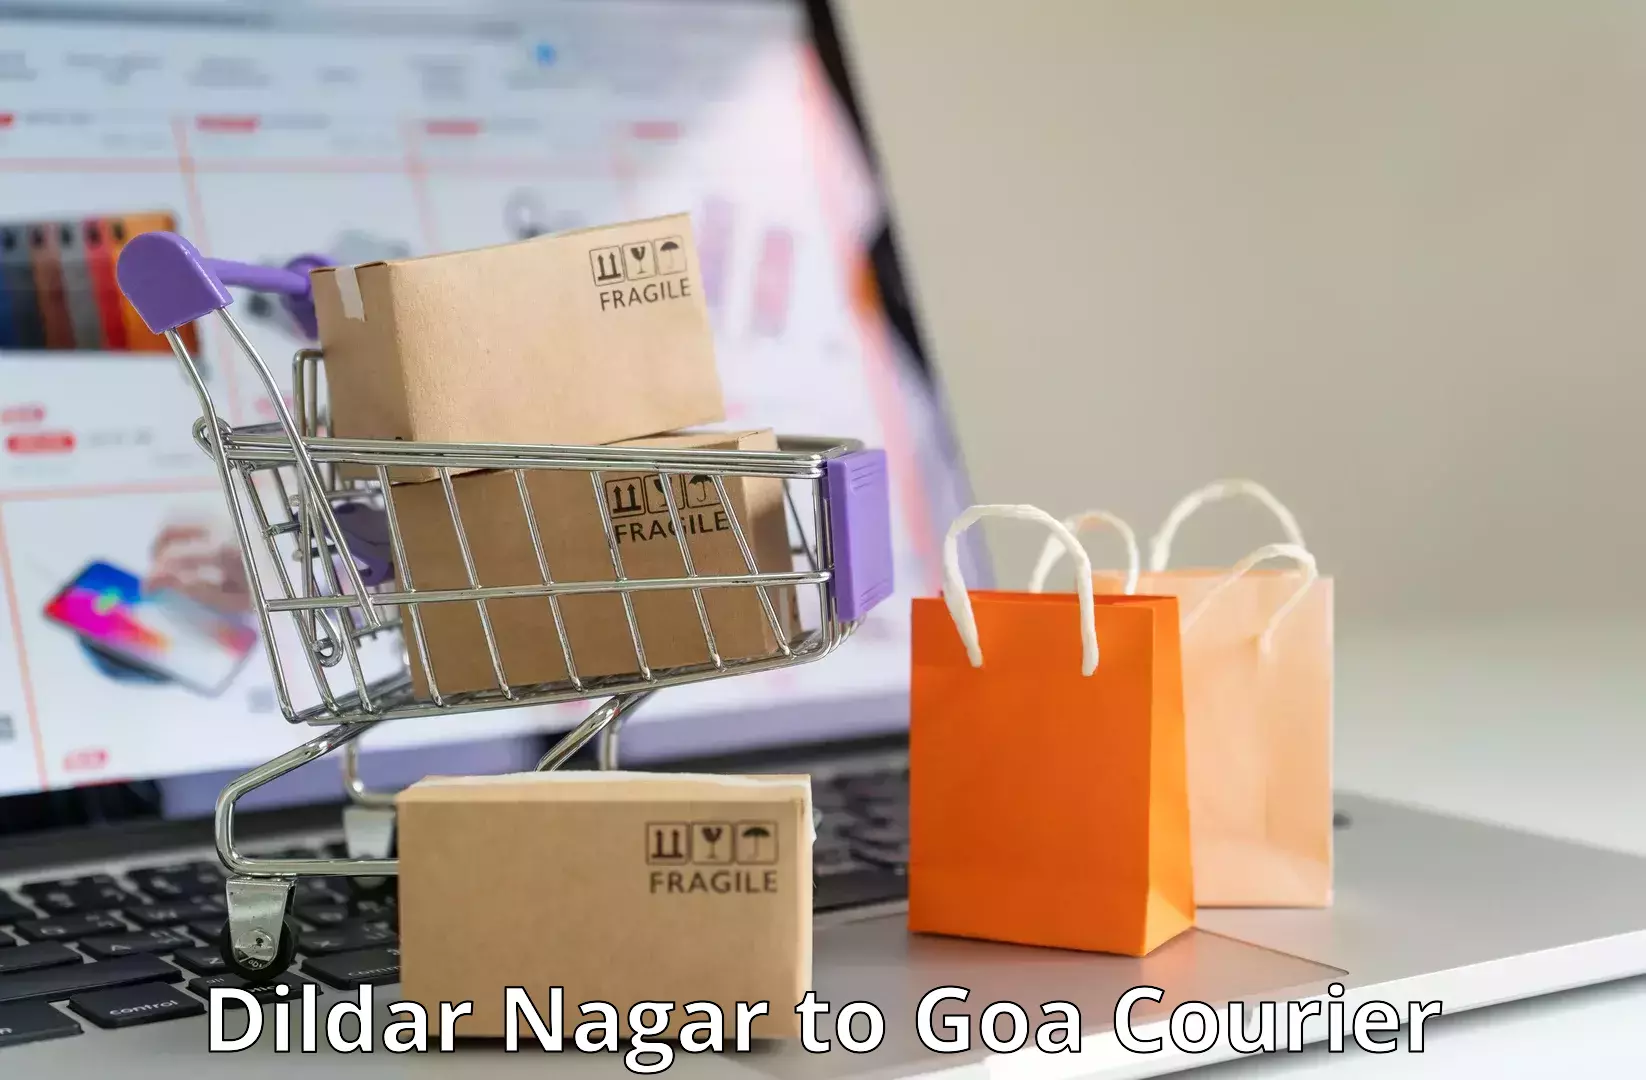 Express logistics providers Dildar Nagar to South Goa